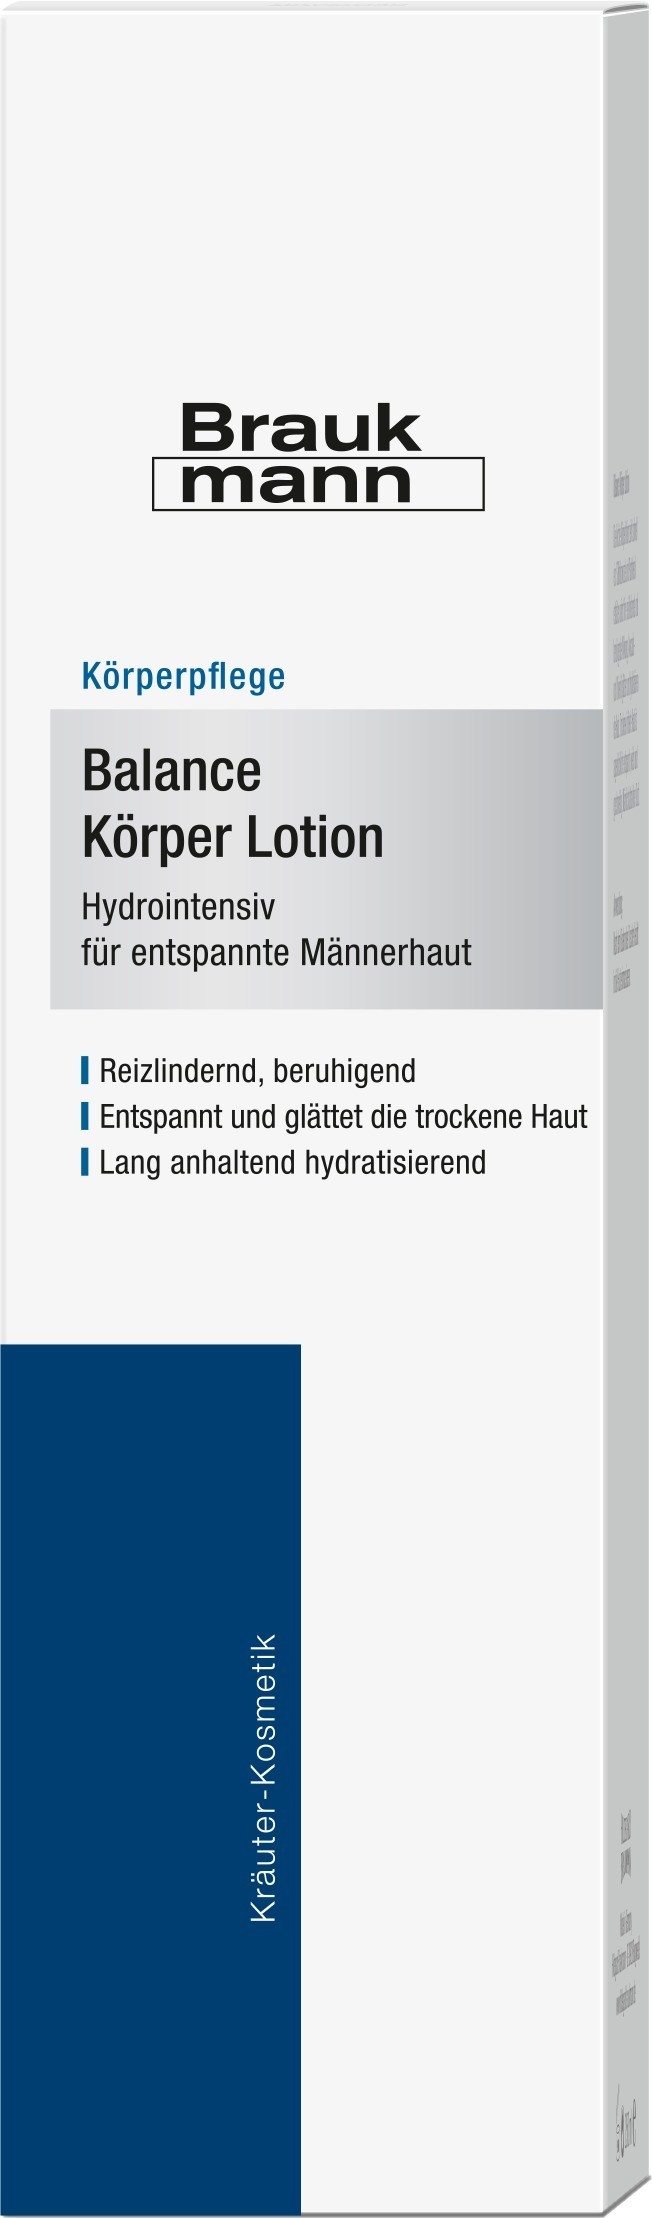 braukmann-balance-korper-lotion